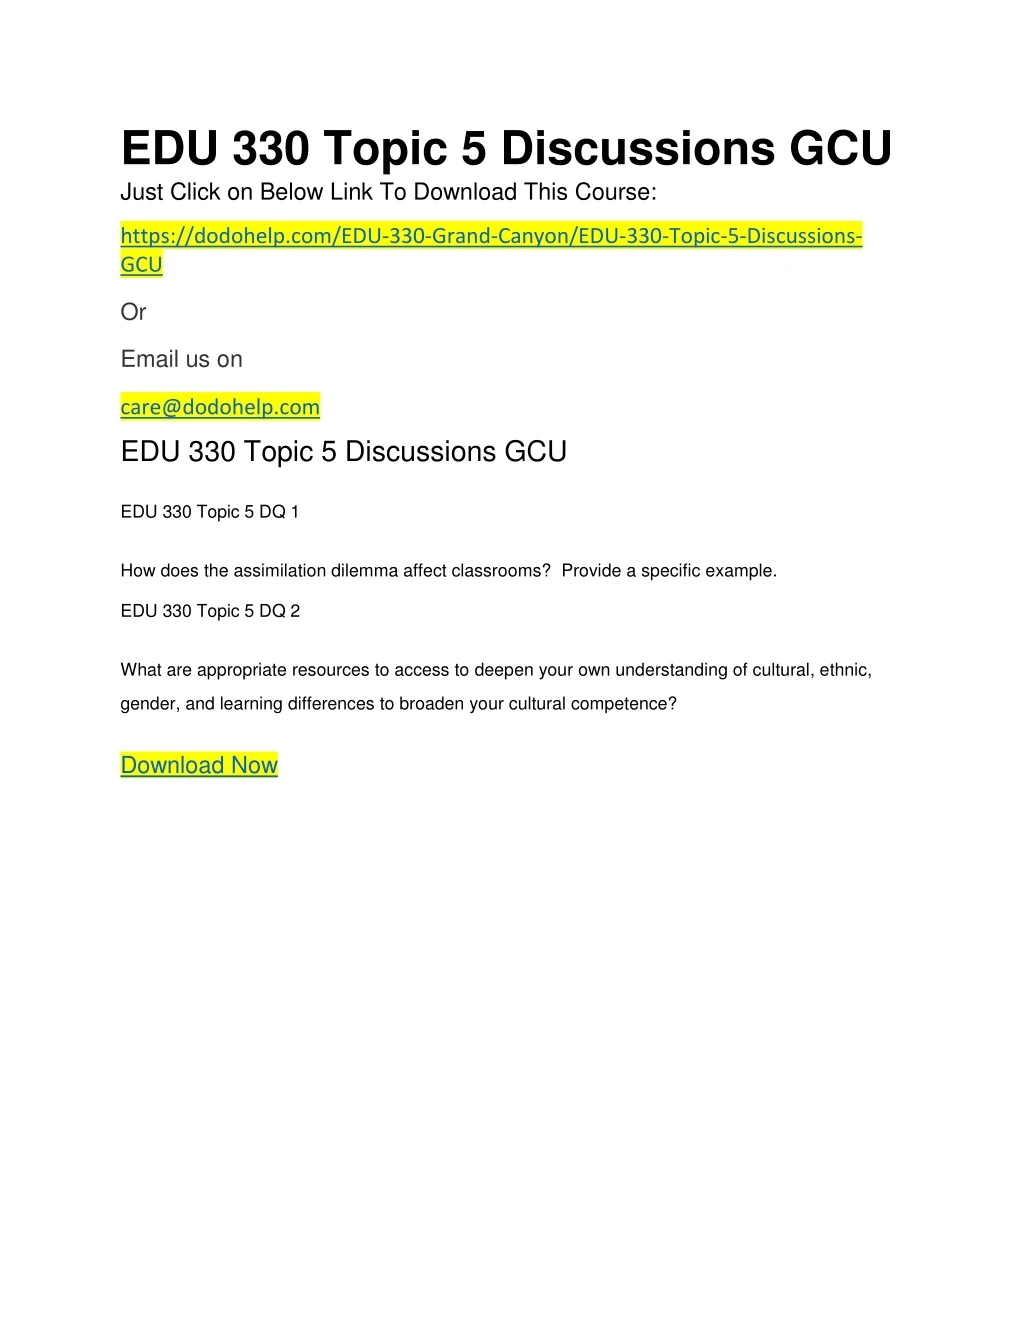 edu 330 topic 5 discussions gcu just click